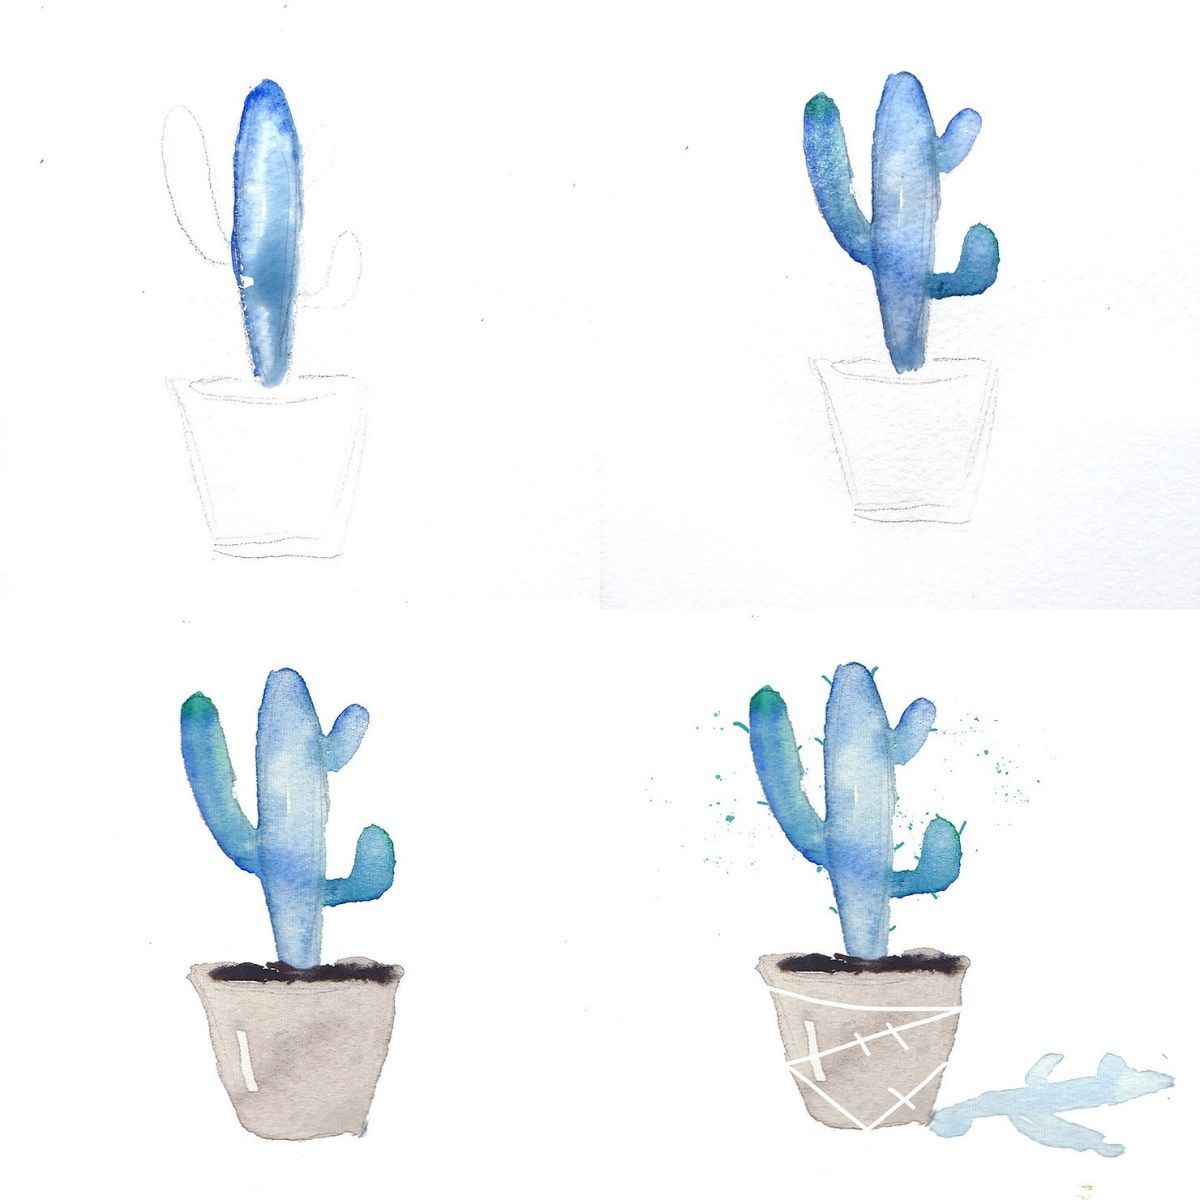 Idee für einen blauen Kaktus aus Wassermalfarben in einfachen Schritten